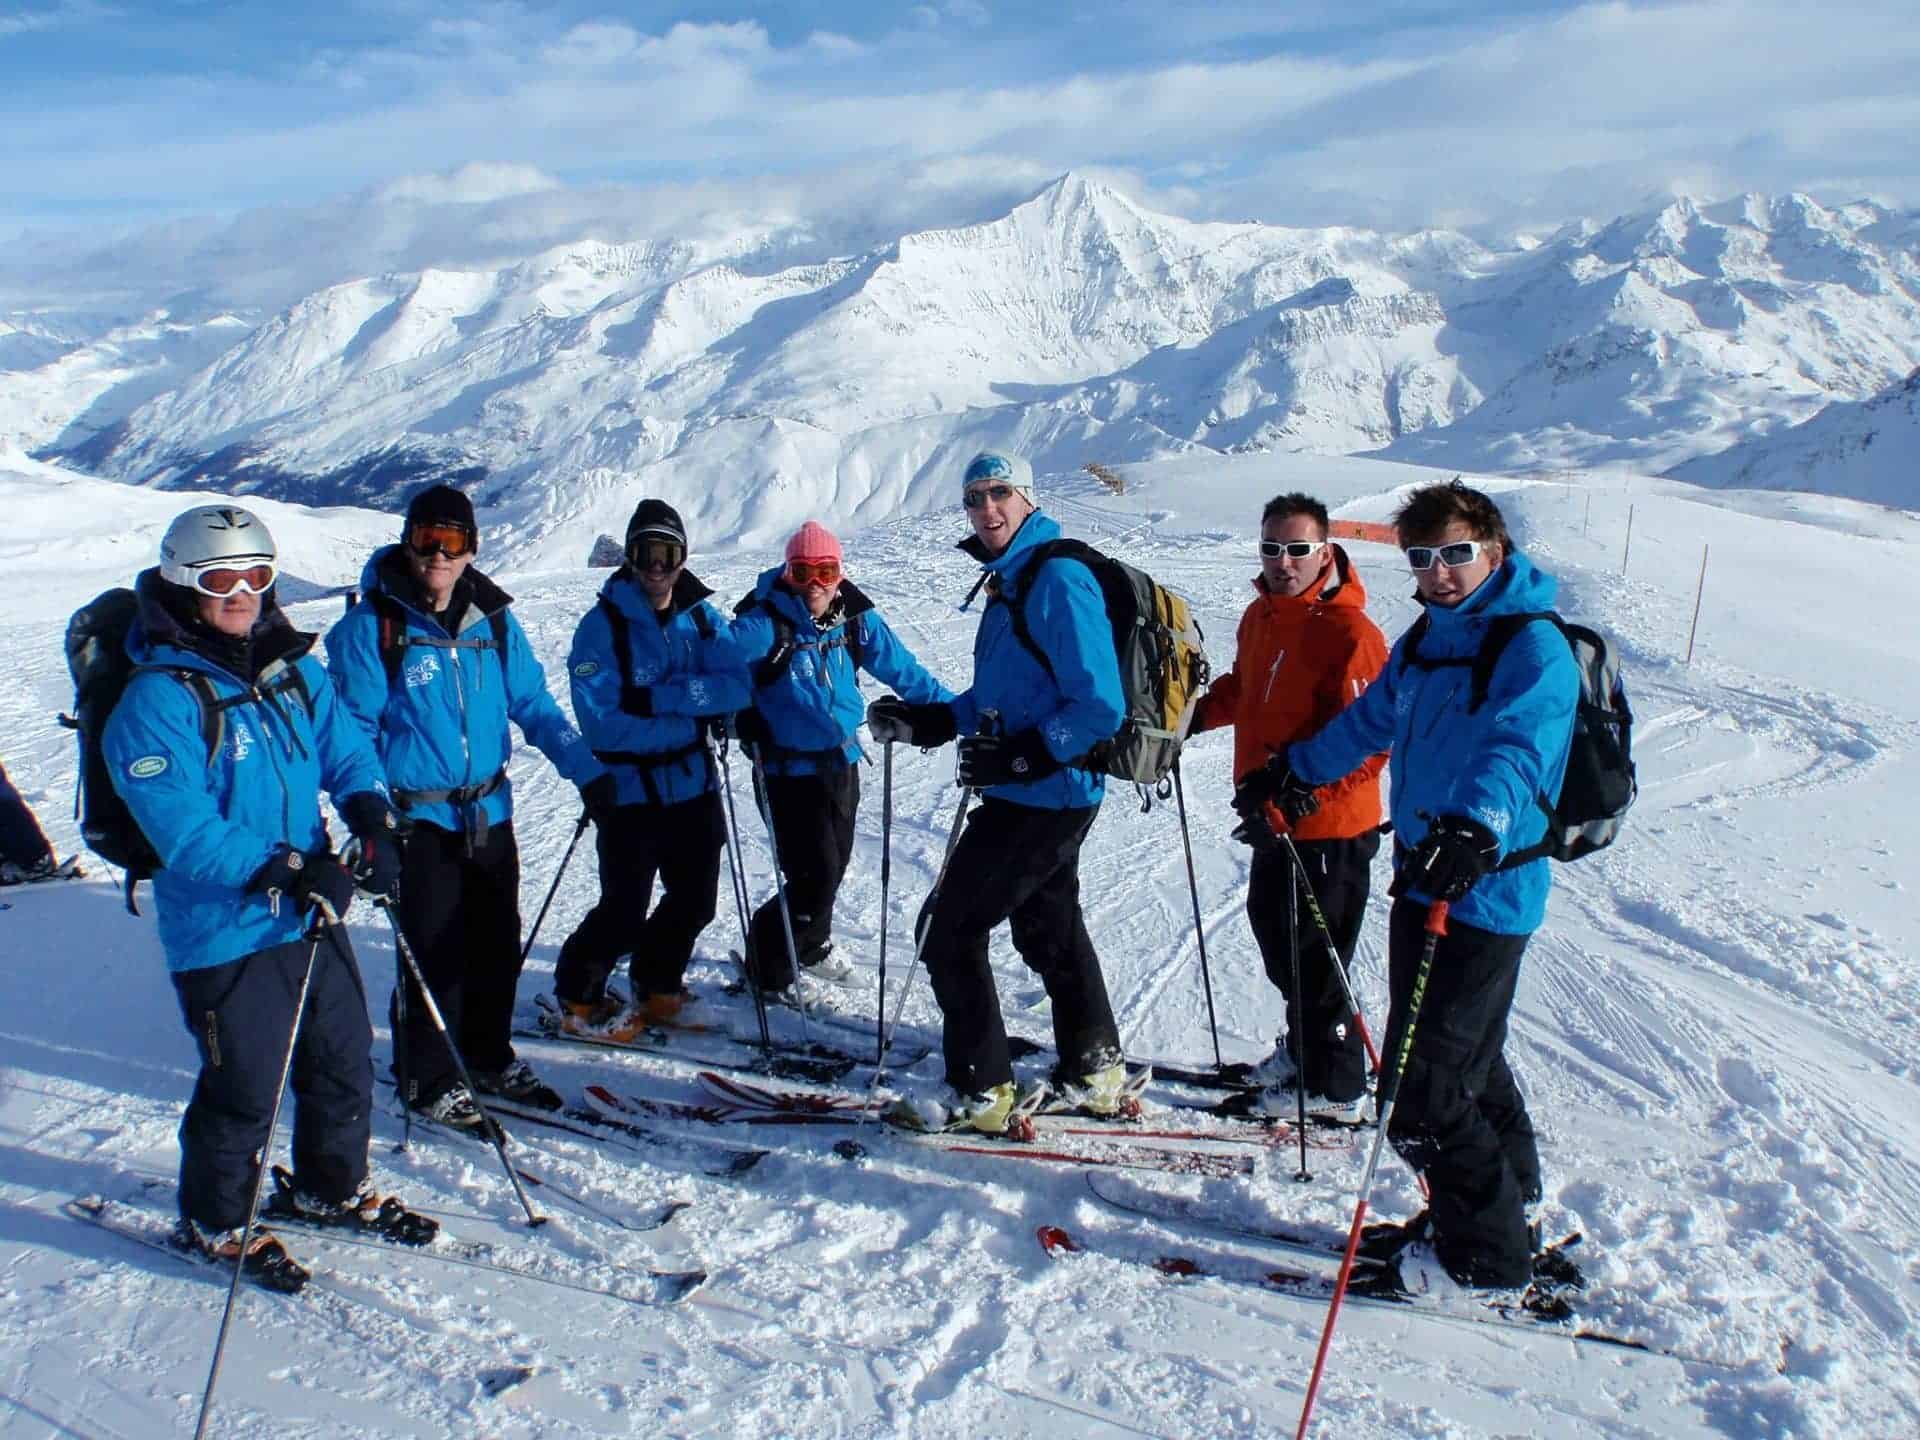 Ski Club Of Great Britain in UK